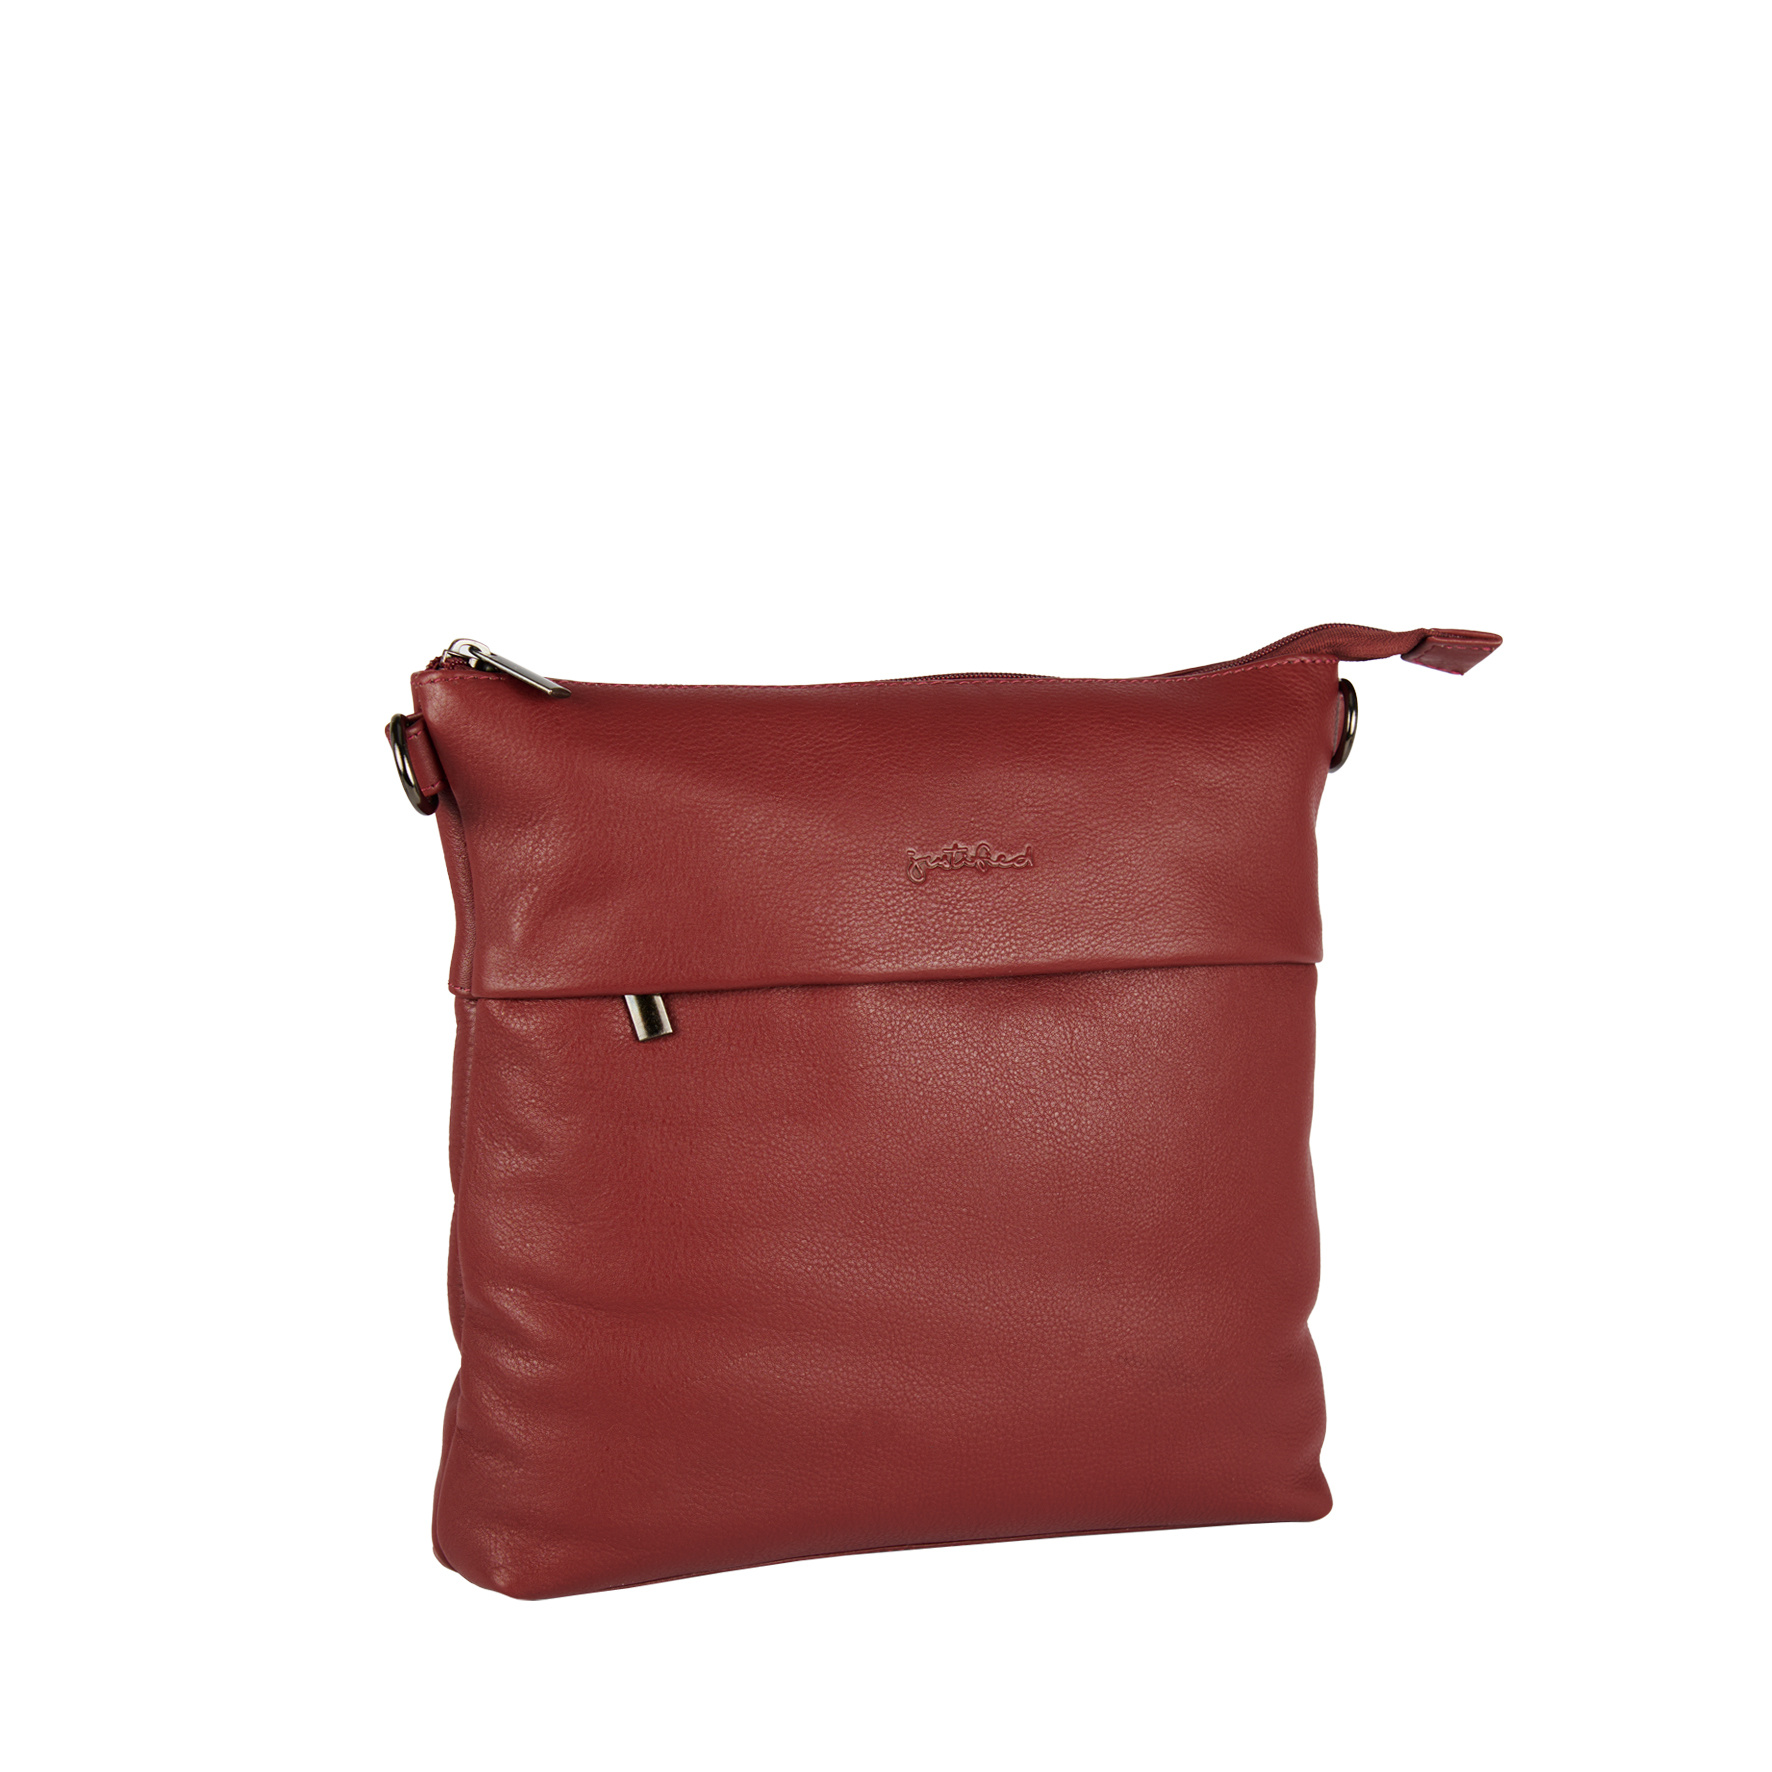 Justified Bags Justified Bags® Nappa III Shoulderbag Burgundy